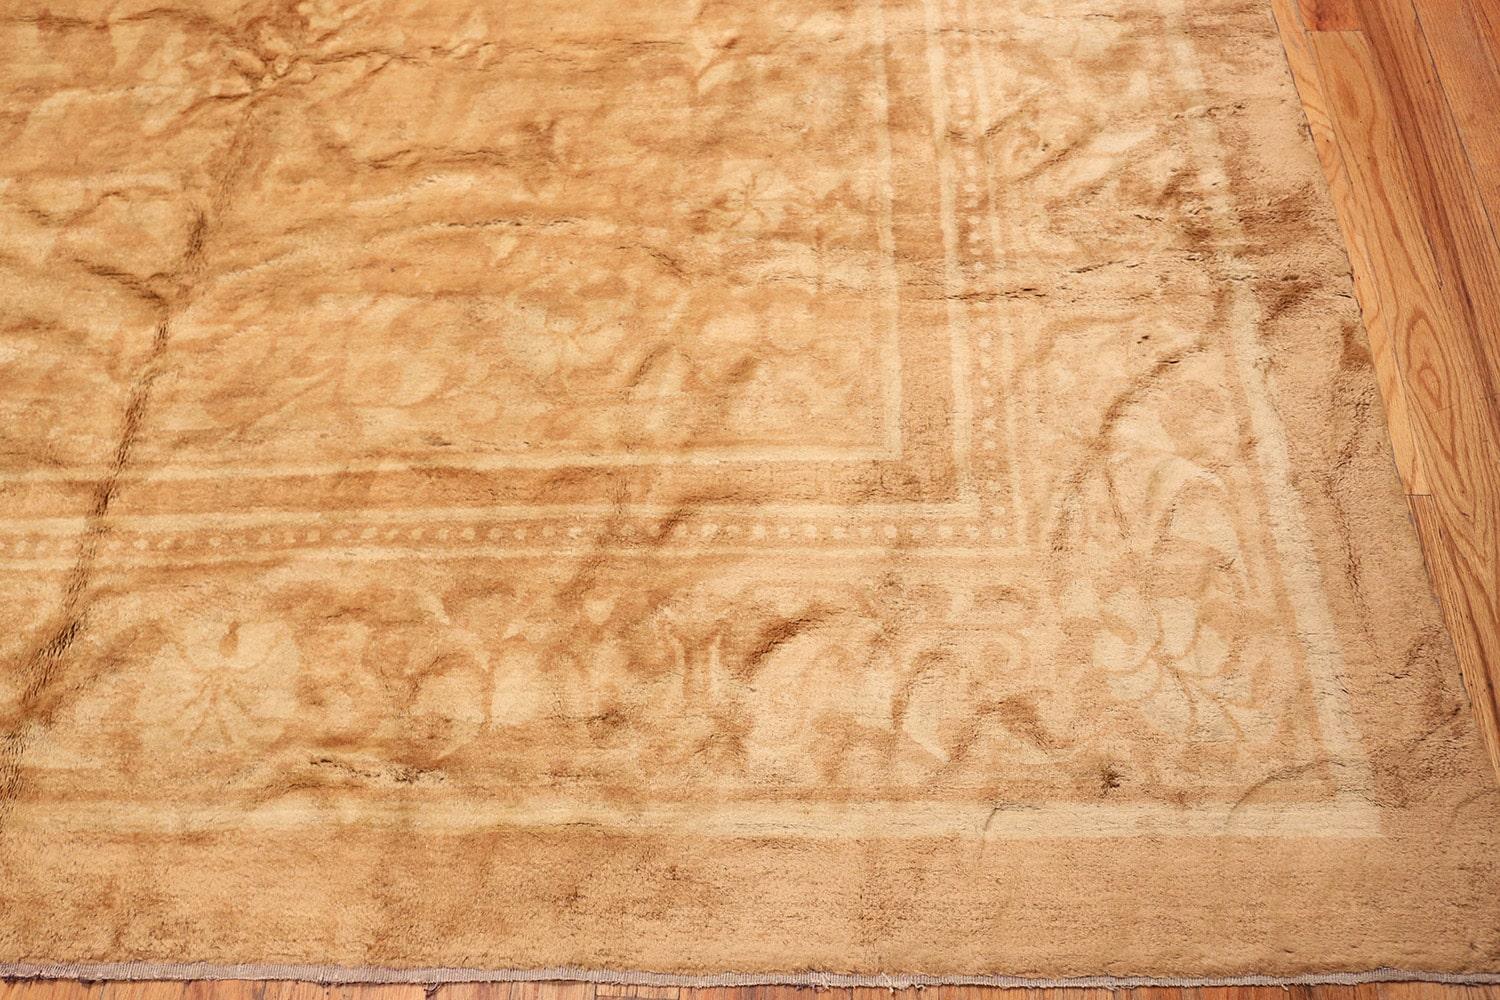 Antique Agra rug, origin: India, circa late 19th century. Size: 15 ft 10 in x 24 ft (4.83 m x 7.32 m).